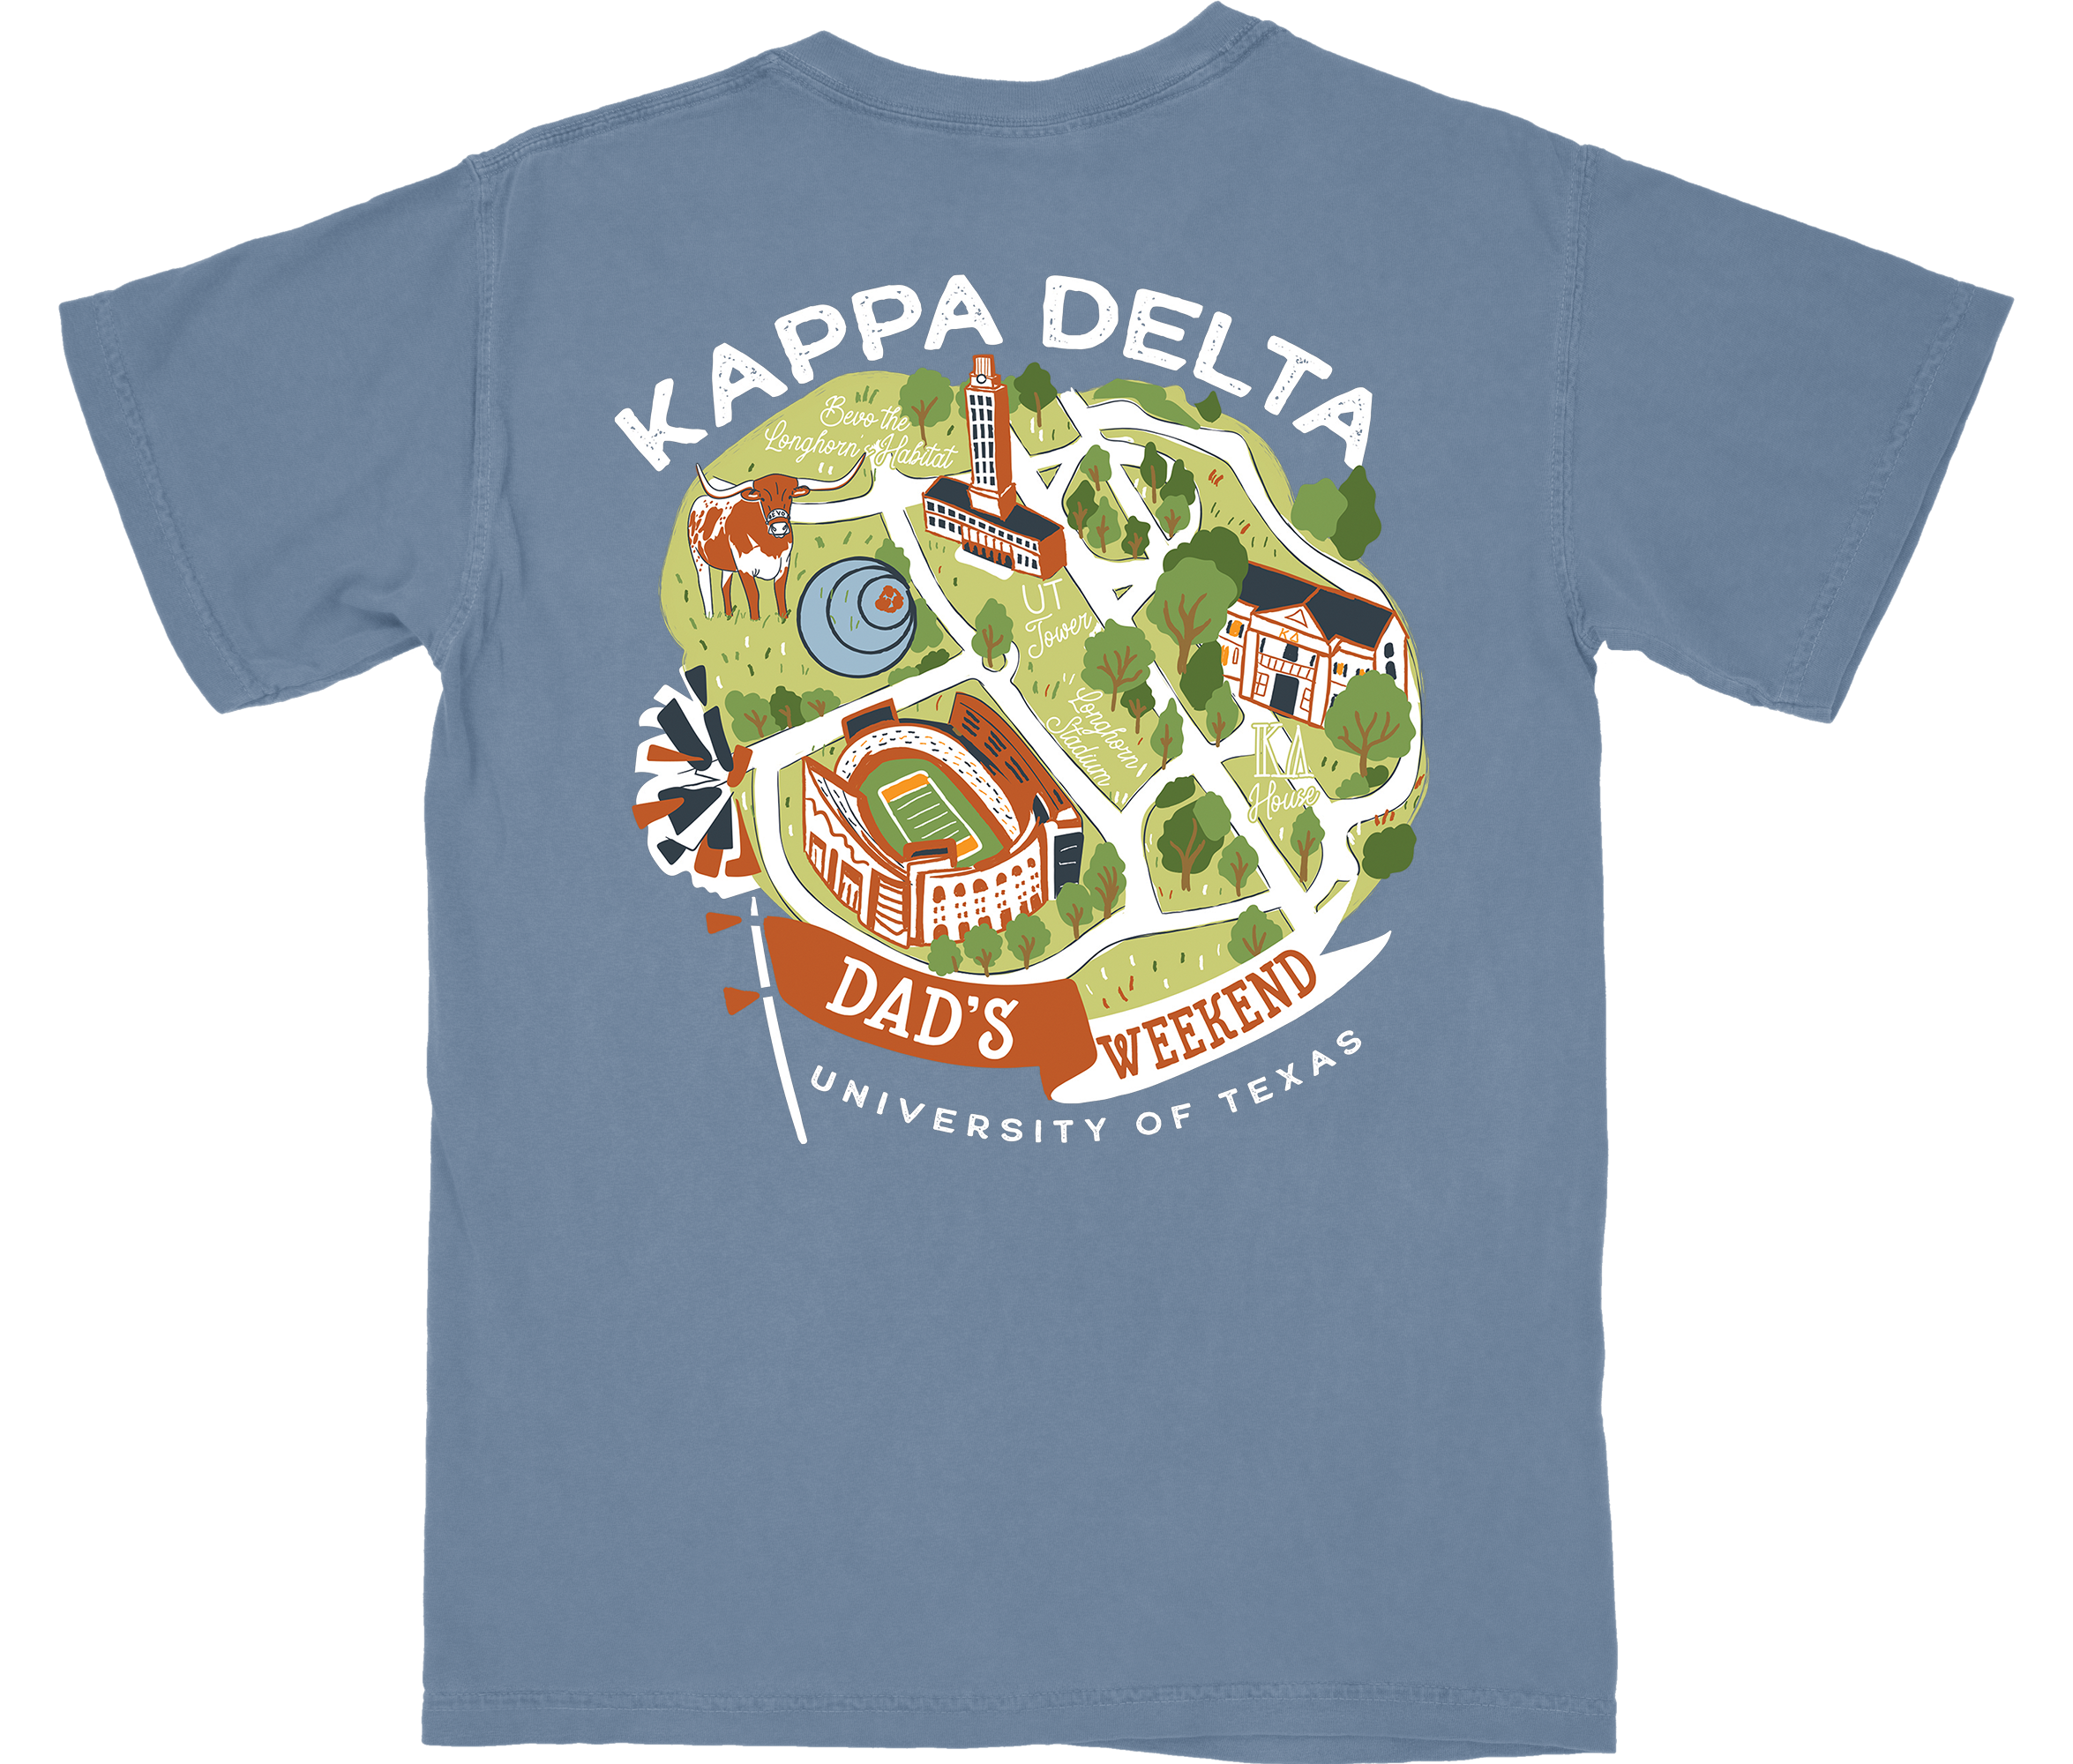 Kappa Delta Dad's Weekend Shirt